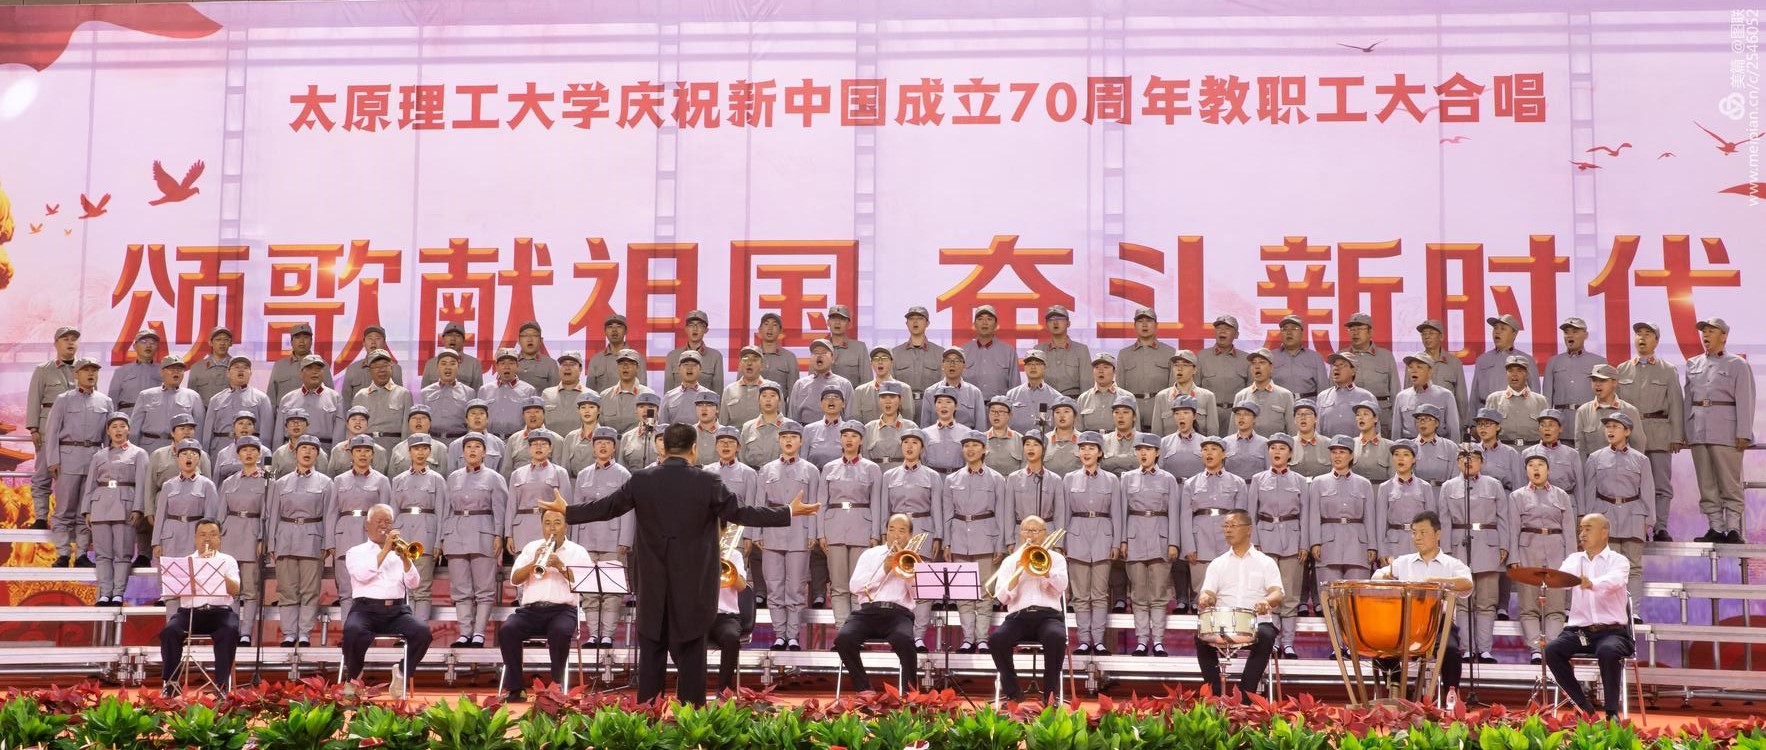 颂歌献祖国奋斗新时代太原理工大学庆祝新中国成立70周年教职工大合唱